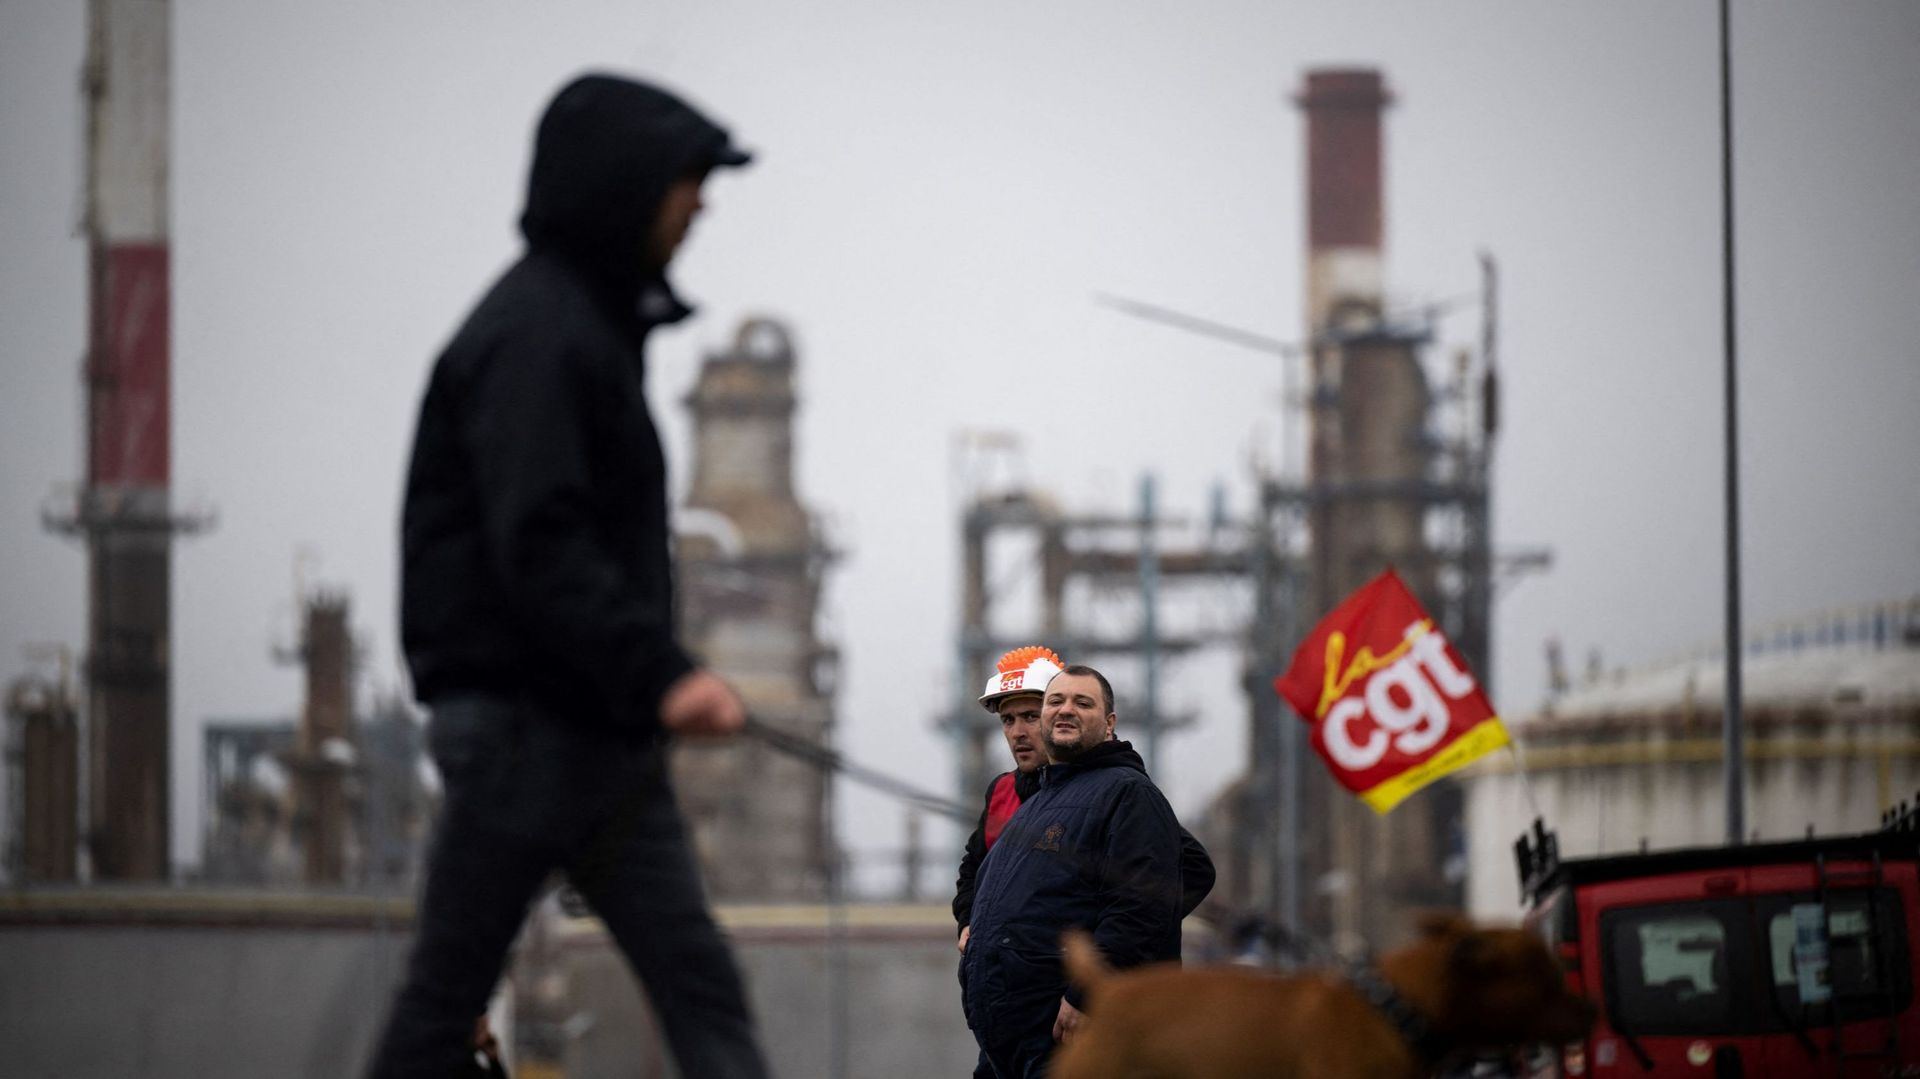 Des syndicalistes et des grévistes sont rassemblés devant le site de la raffinerie TotalEnergies, à Donges, dans l'ouest de la France. 